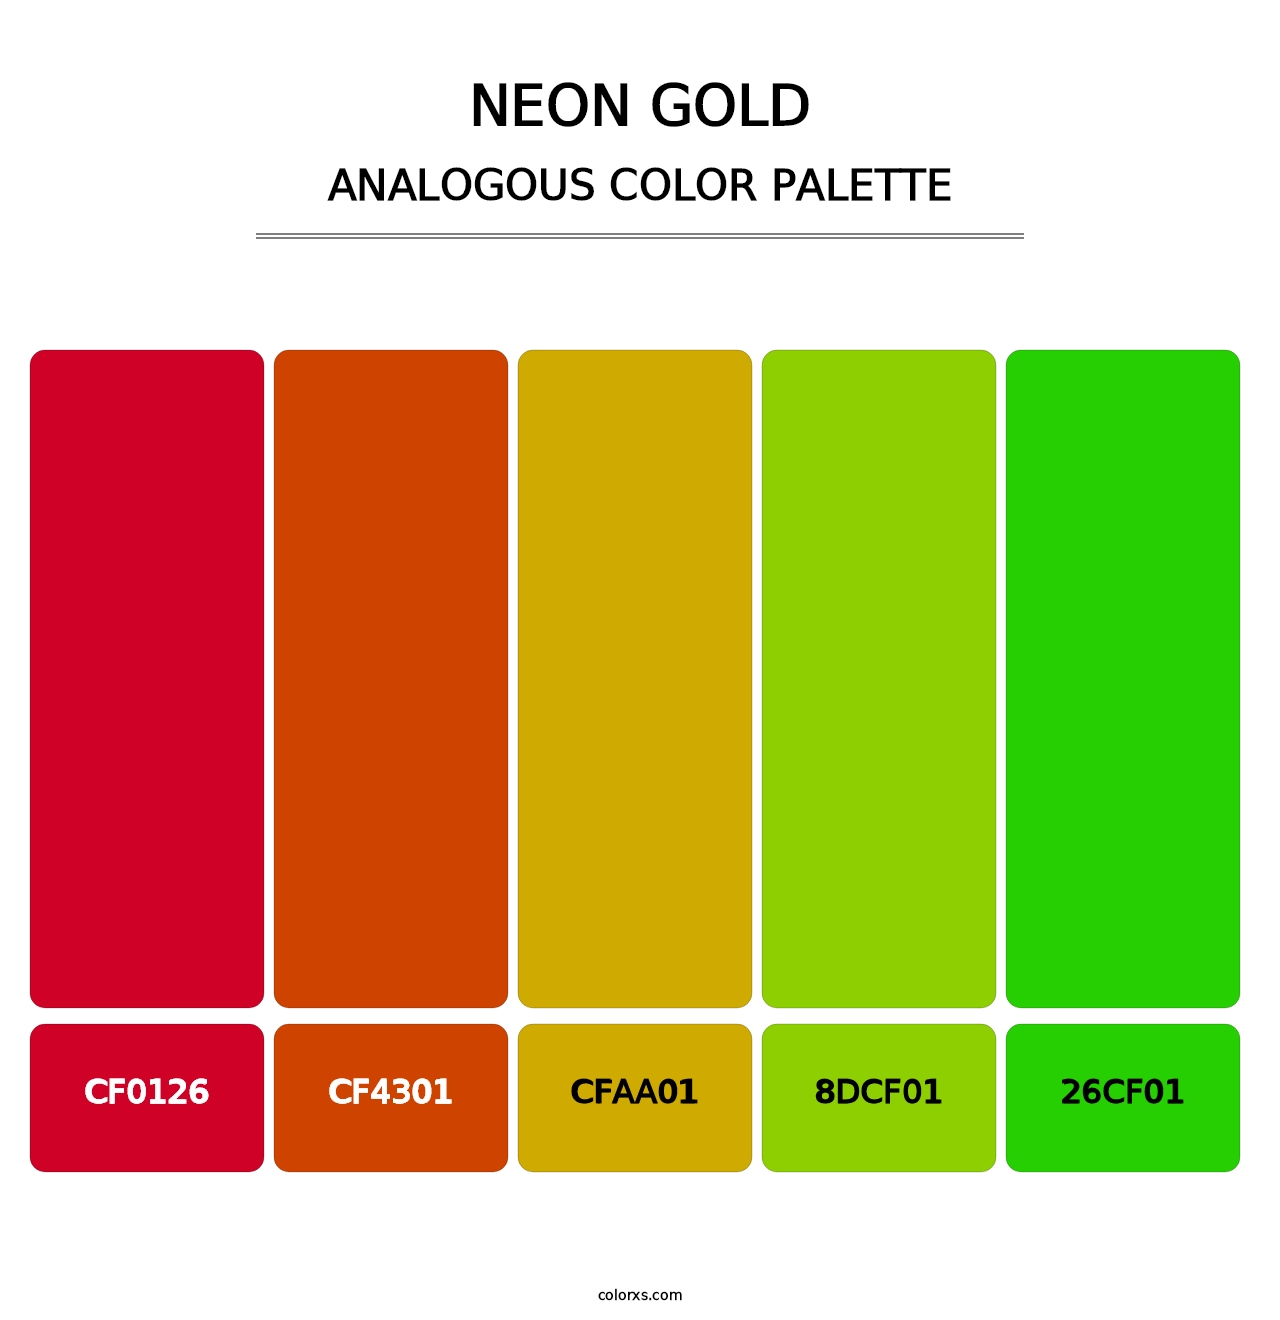 Neon Gold - Analogous Color Palette